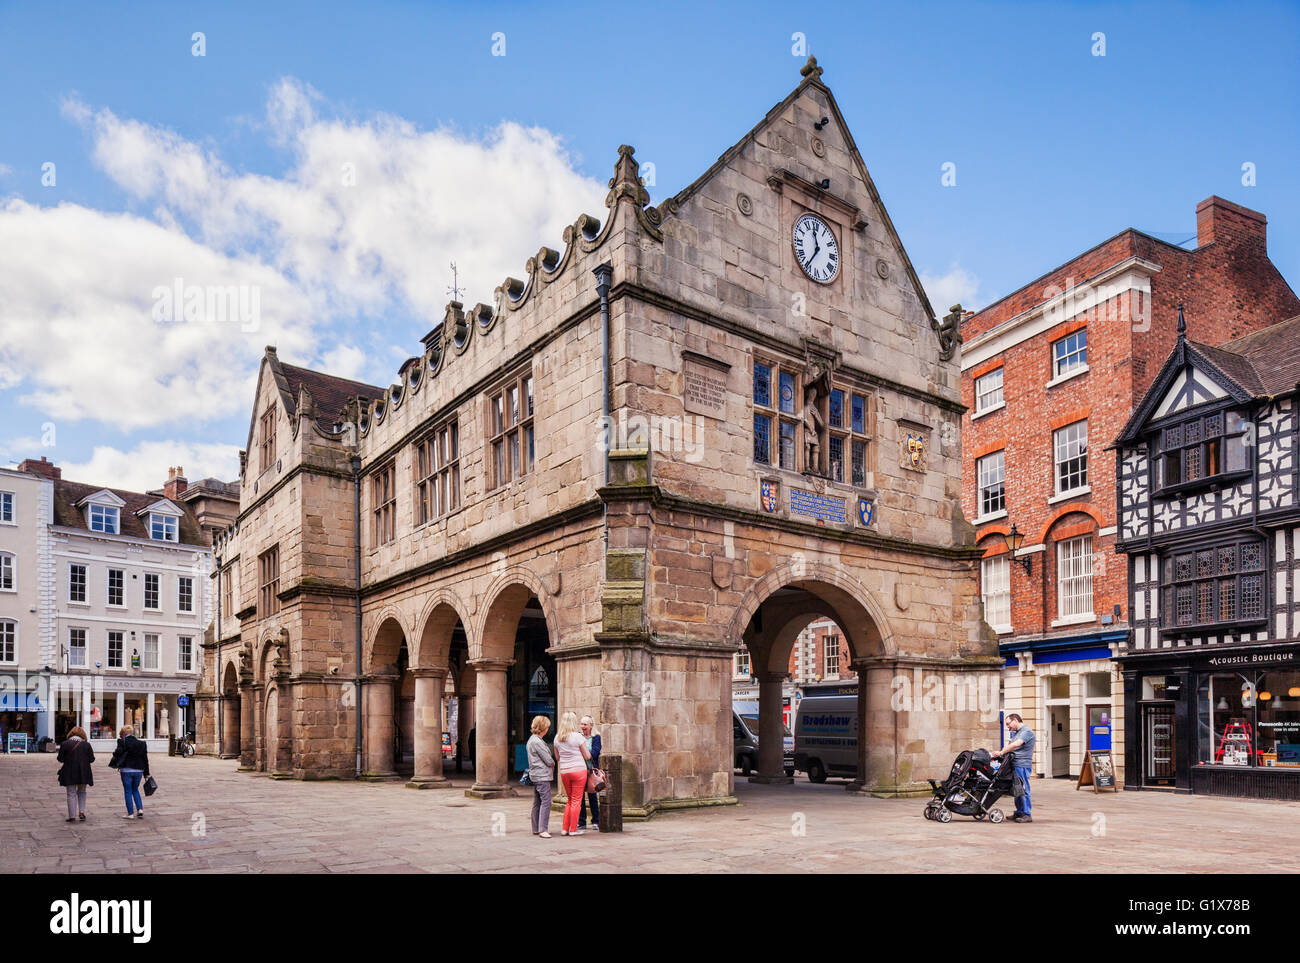 Shrewsbury, die alte Markthalle in der Market Square, Shropshire, England, UK, gebaut im Jahre 1596. Stockfoto